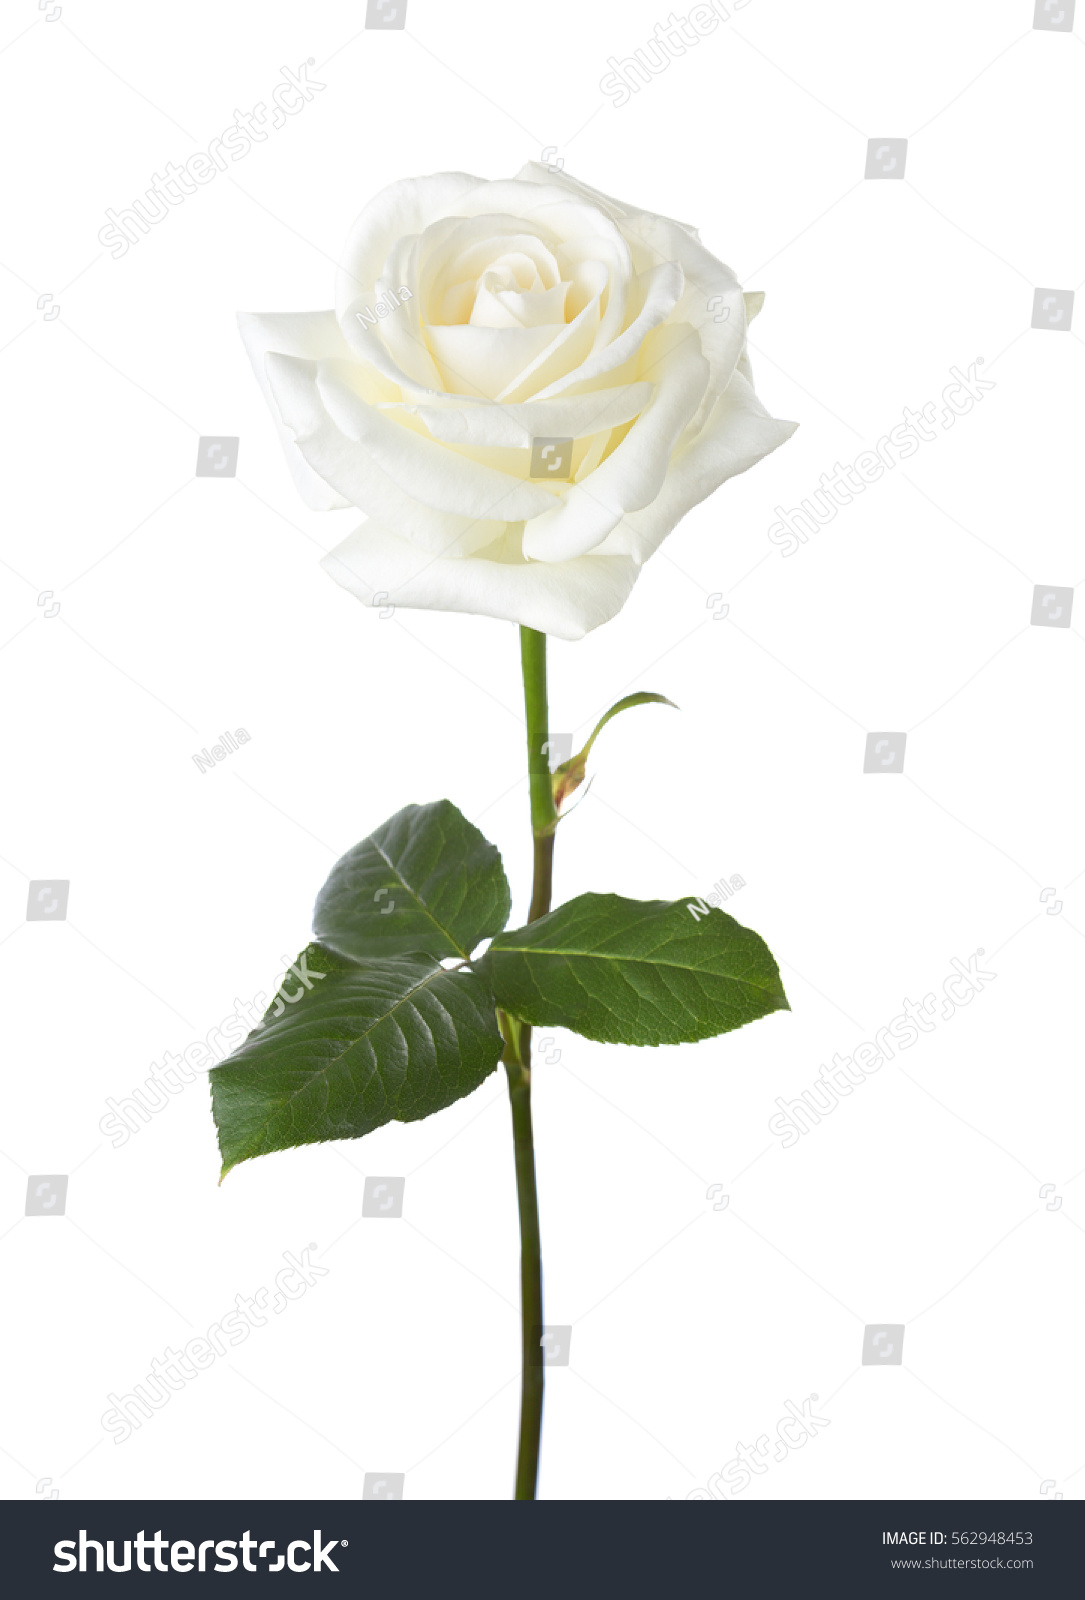 White rose isolated on white background. #562948453